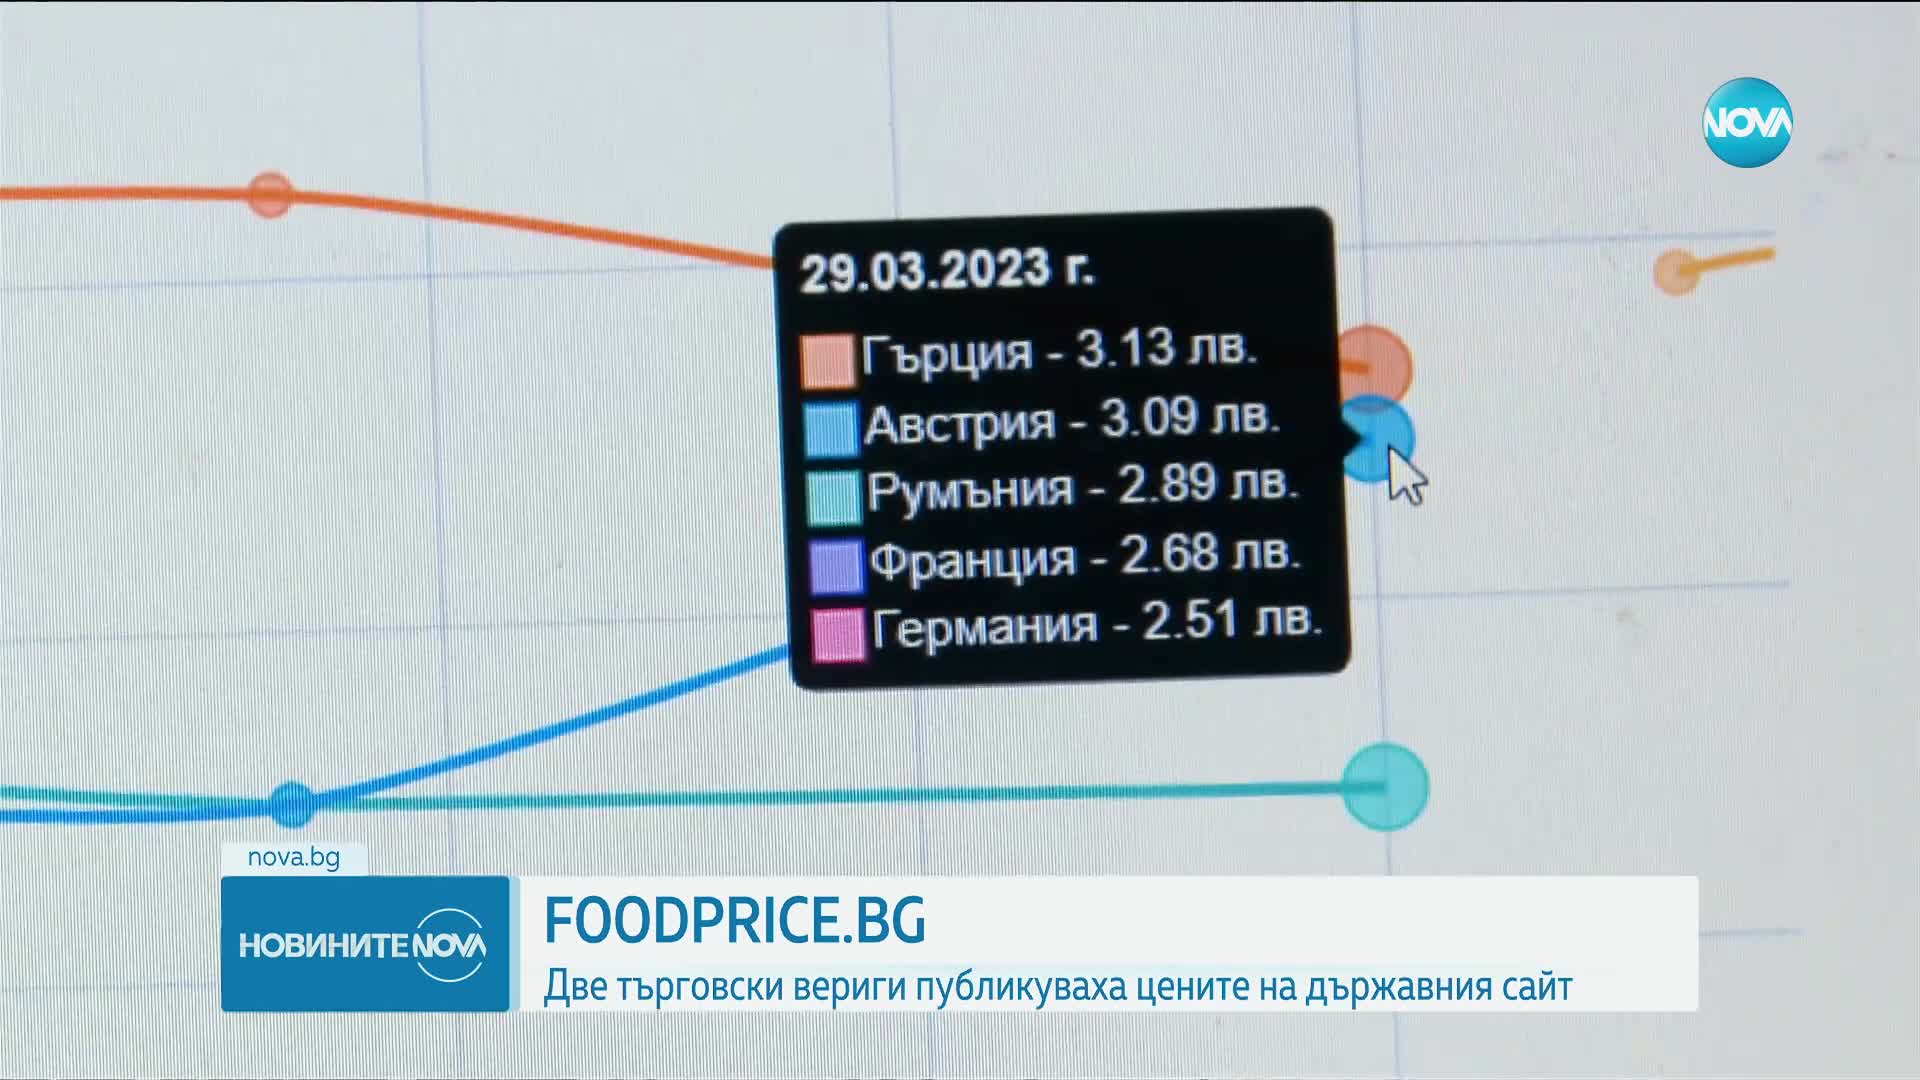 FOODPRICE.BG: Две търговски вериги публикуваха цените на държавния сайт